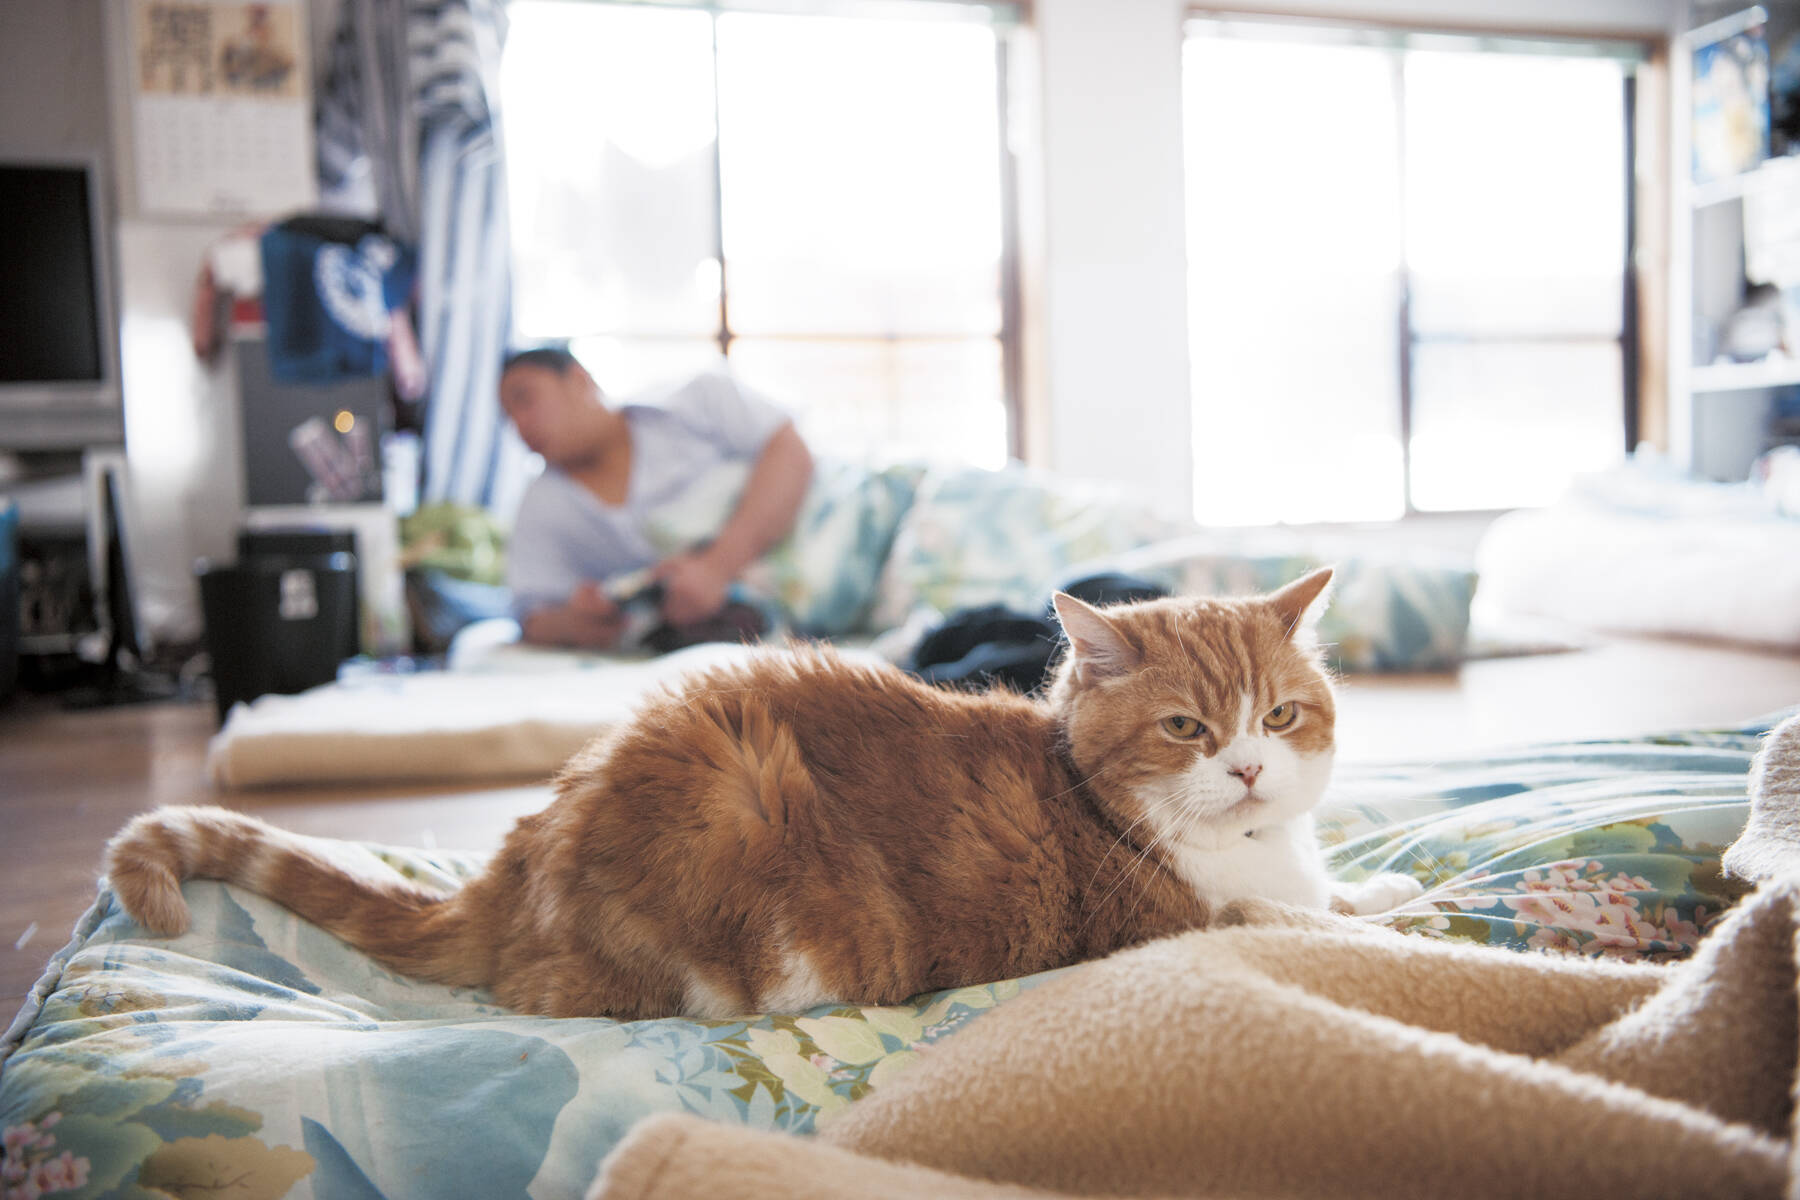 世界一相撲を見ている2匹の猫 モル と ムギ が大人気 エキサイトニュース